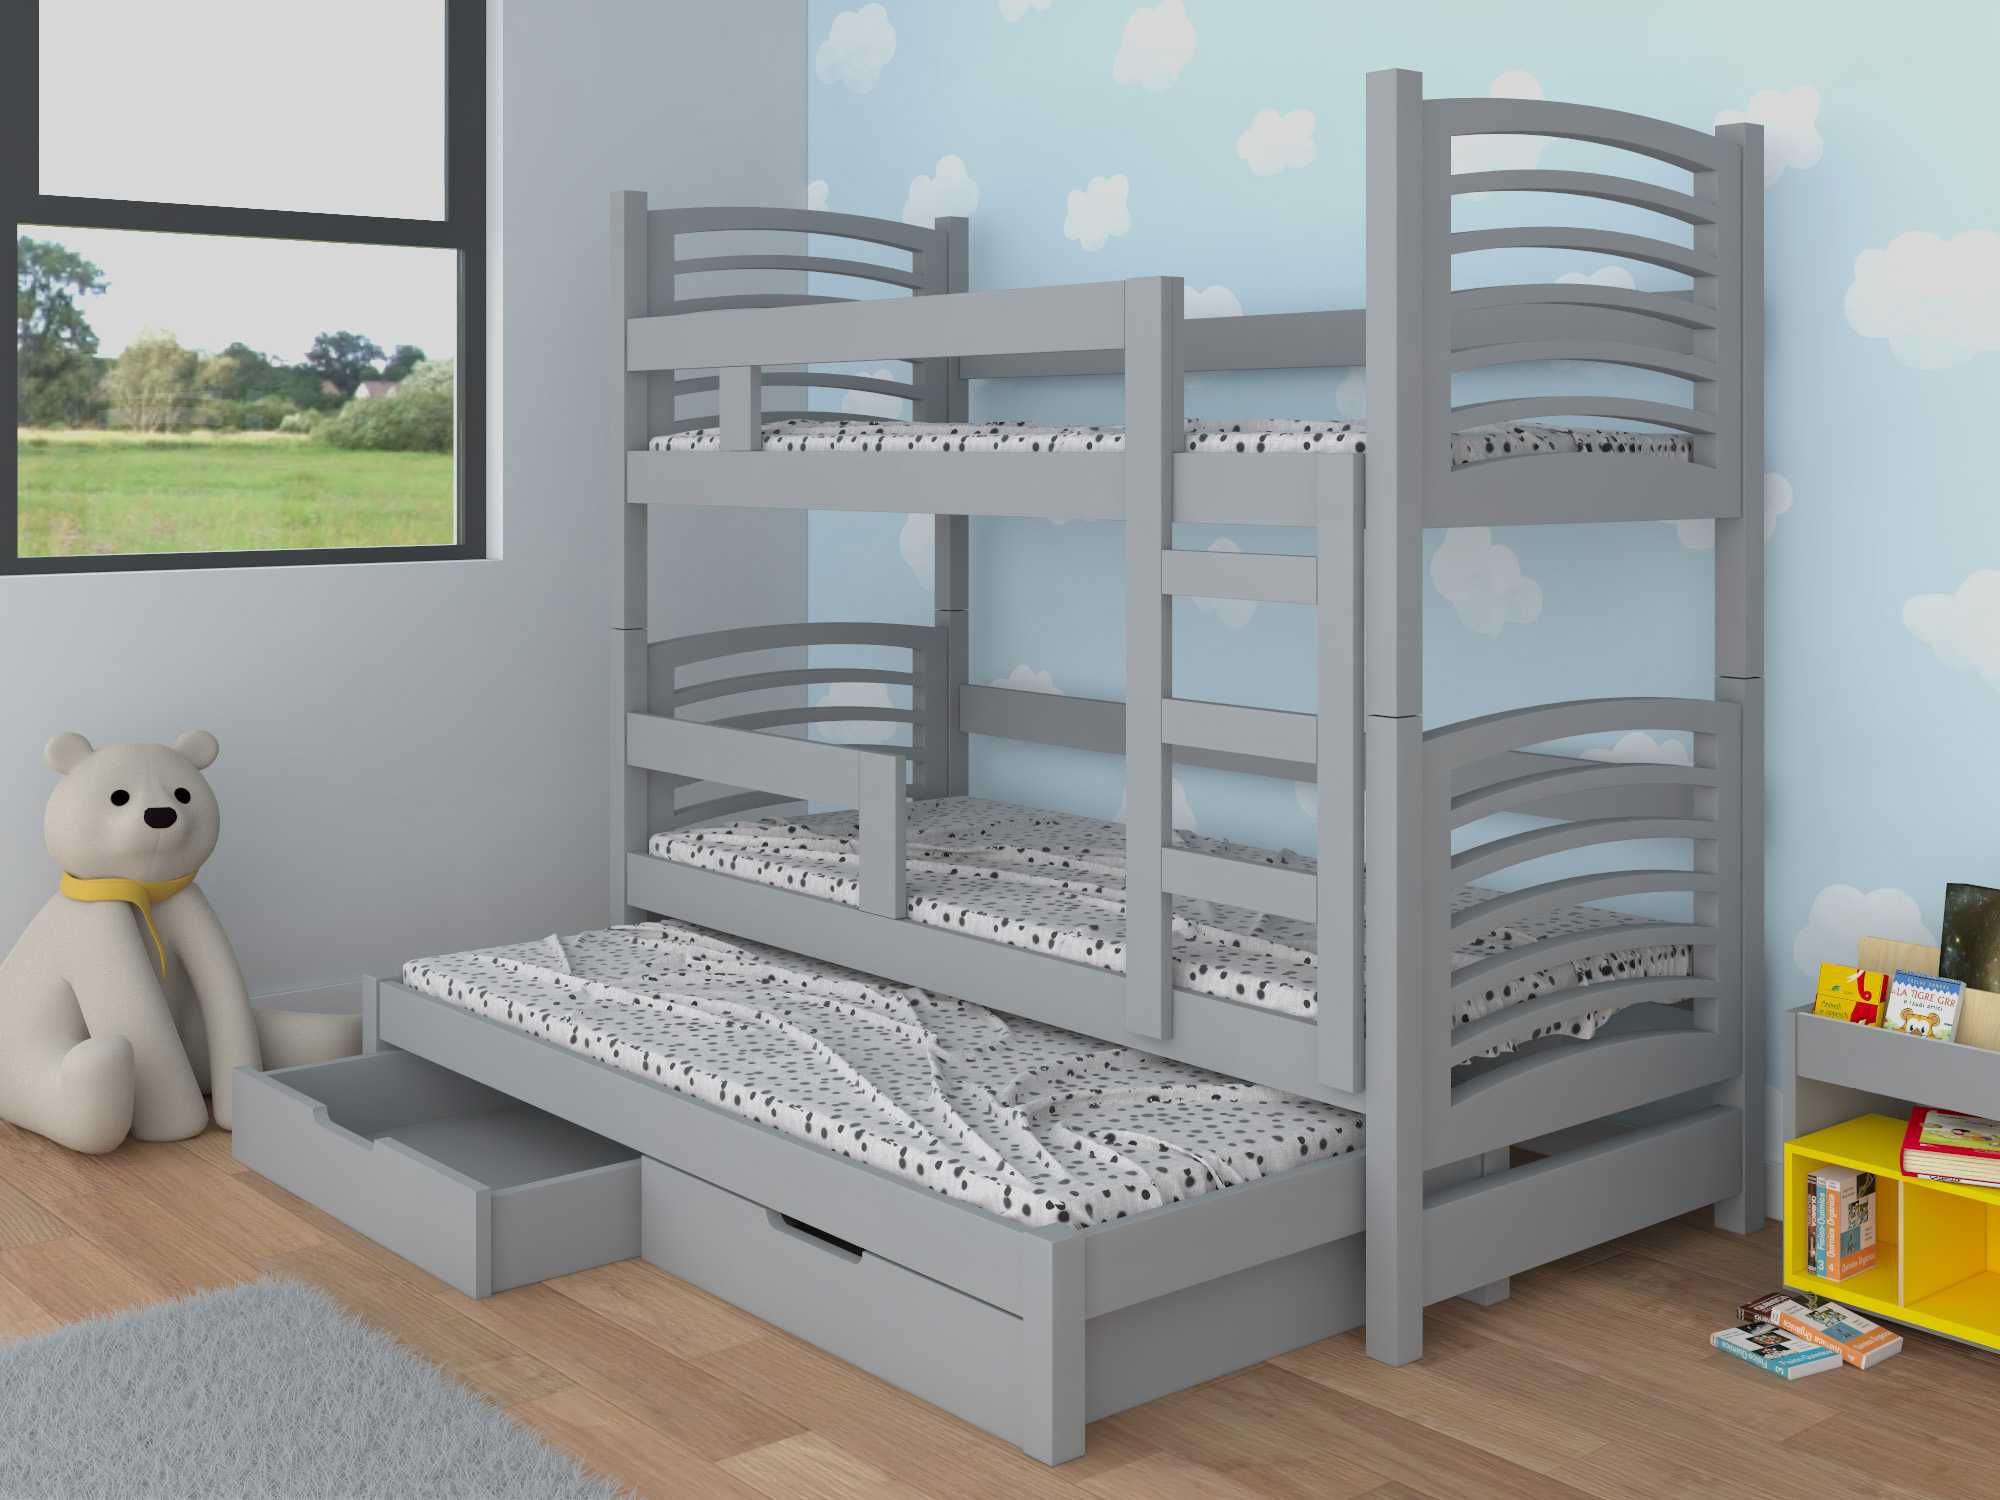 Łóżko piętrowe OLI 3 z wysuwanym spaniem + materace GRATIS